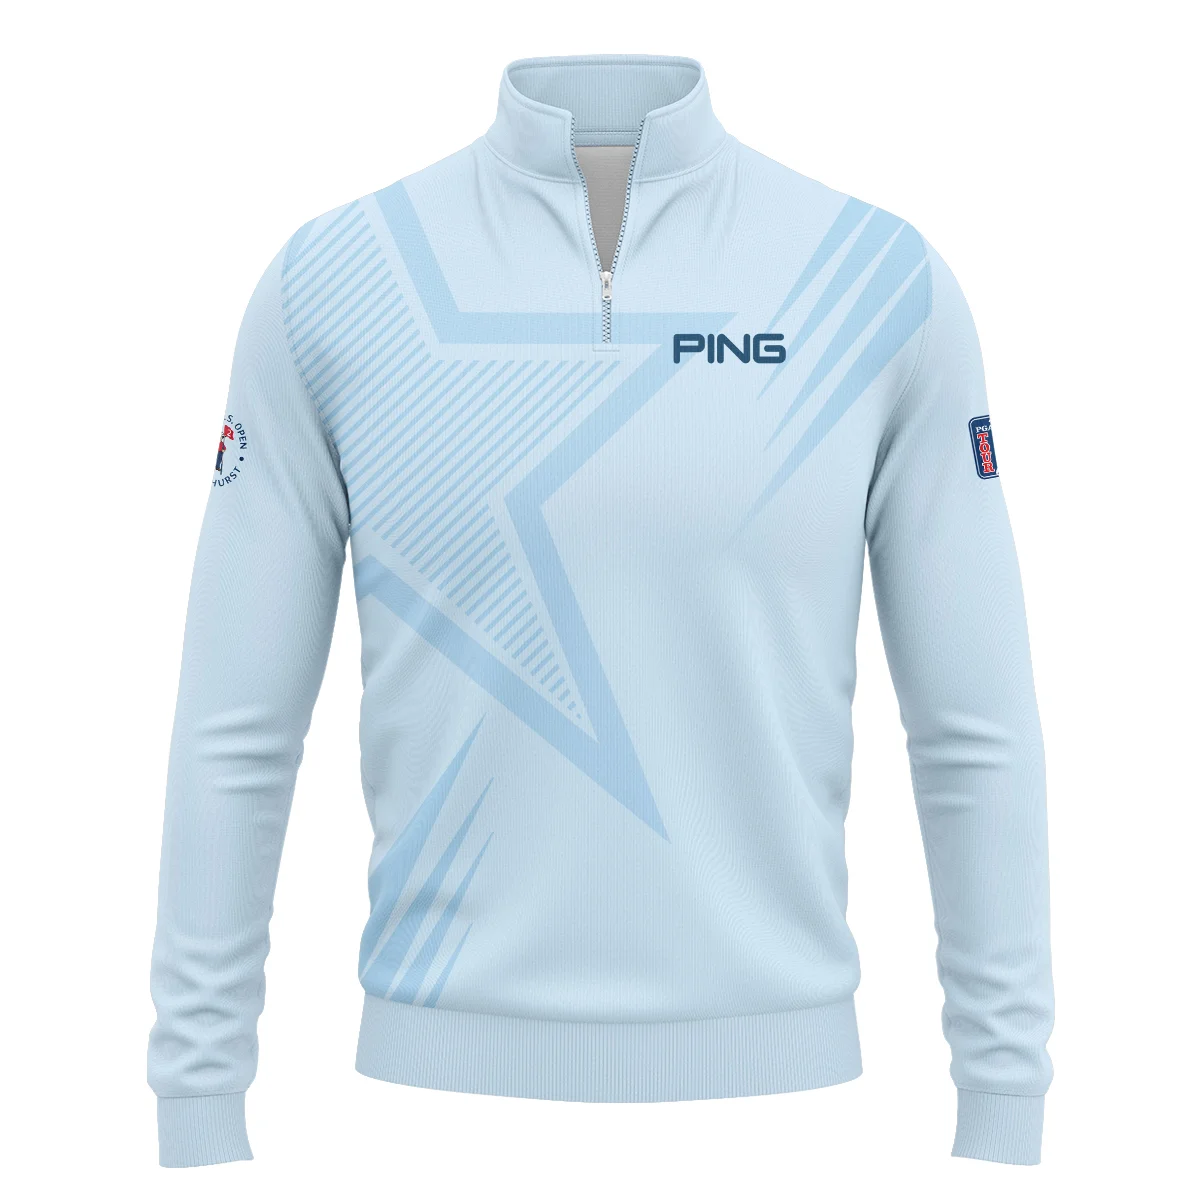 124th U.S. Open Pinehurst Golf Star Line Pattern Light Blue Ping Zipper Hoodie Shirt Style Classic Zipper Hoodie Shirt